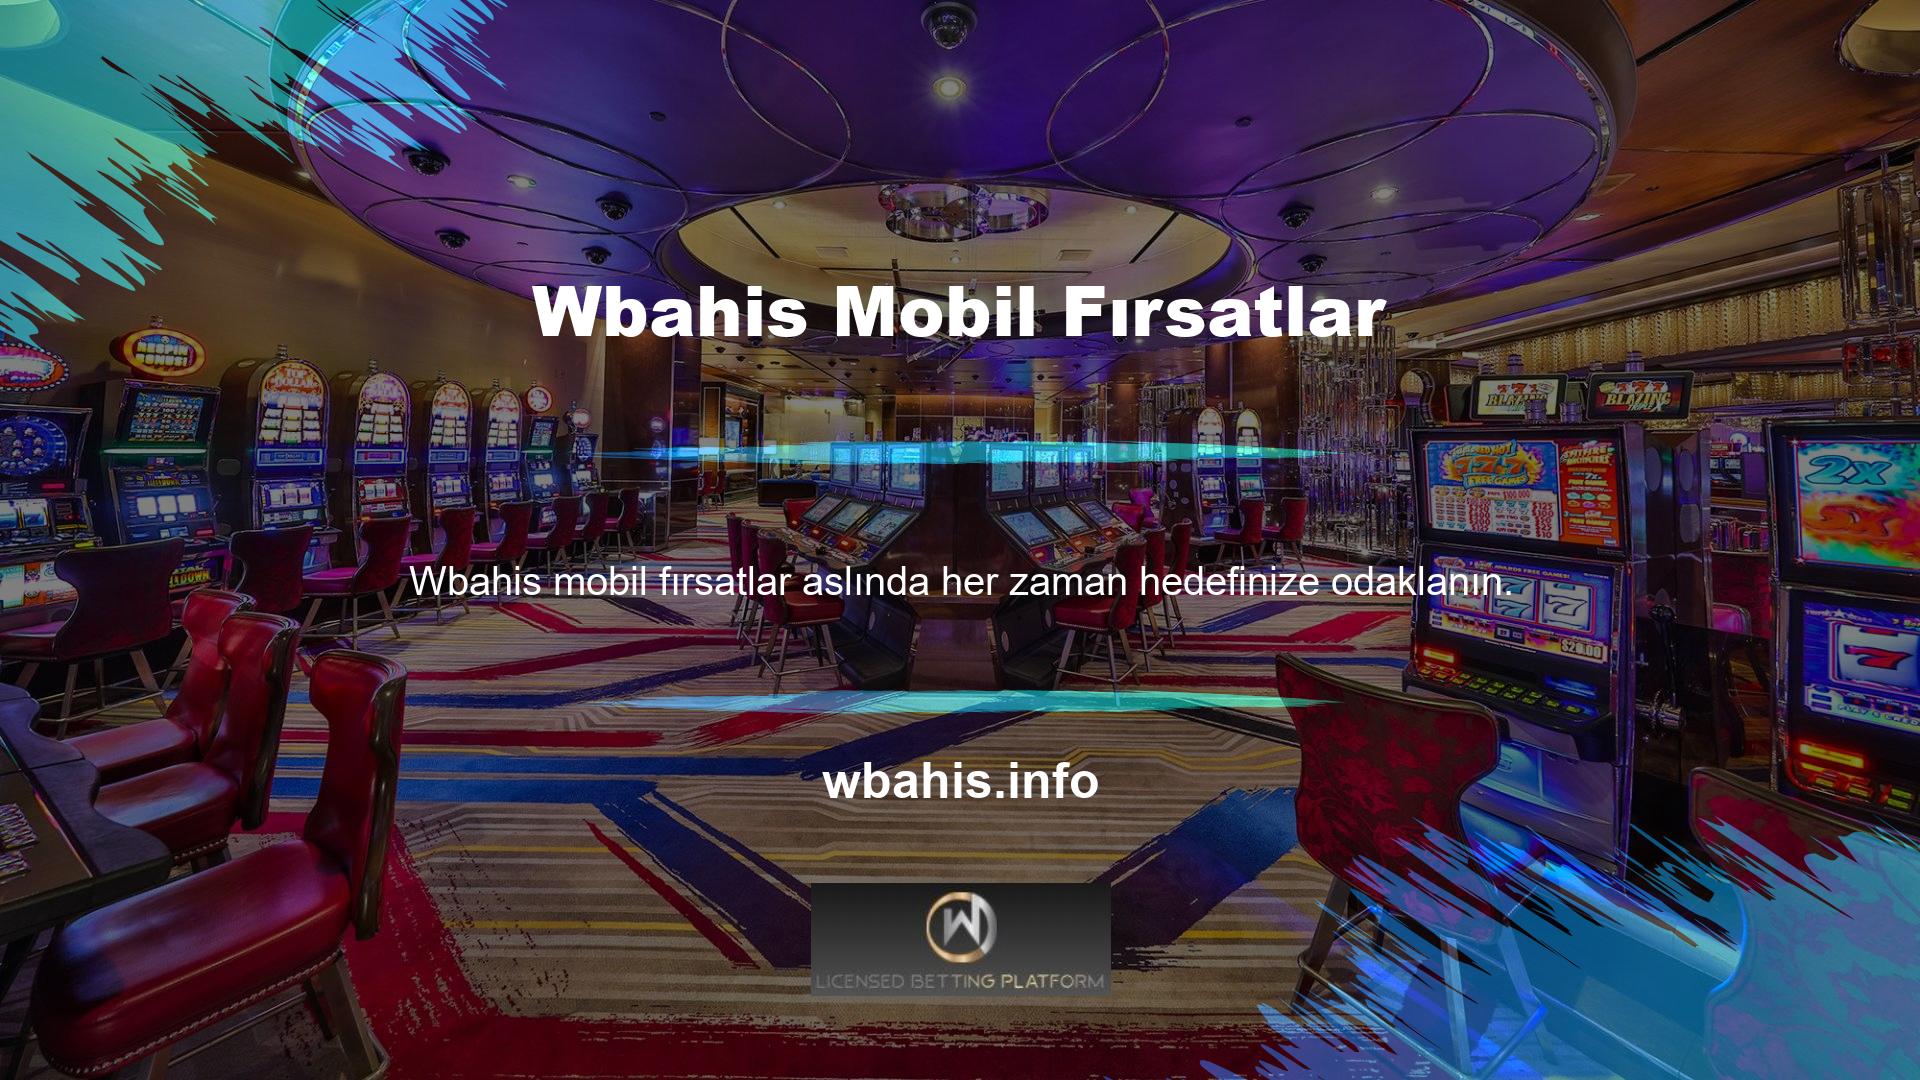 Yeni Wbahis mobil fırsat casino oyunlarını cep telefonunuzdan rahatlıkla oynayabilirsiniz